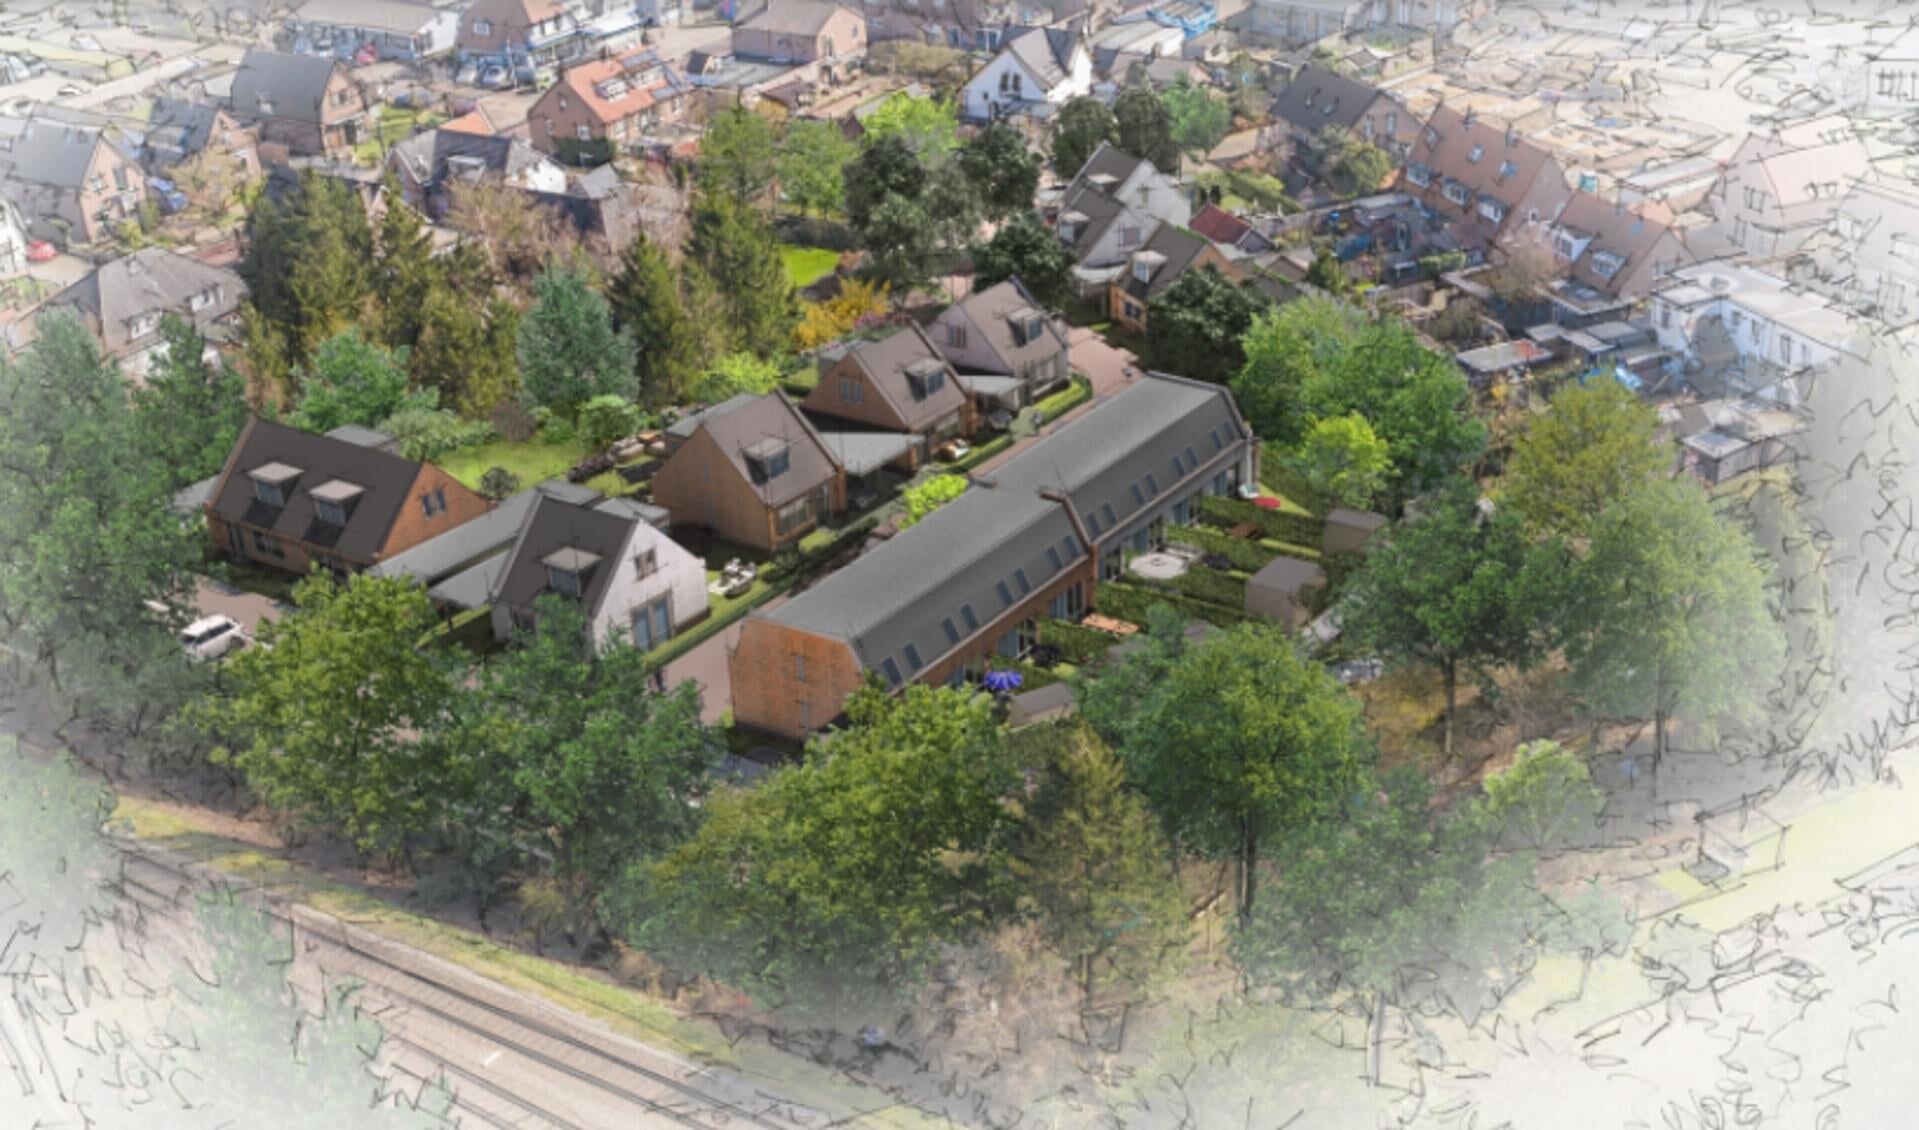 Artist-impression van het beoogde woonwijkje met 18 woningen aan de Kokstraat in Eefde. Bron: debunte.nl